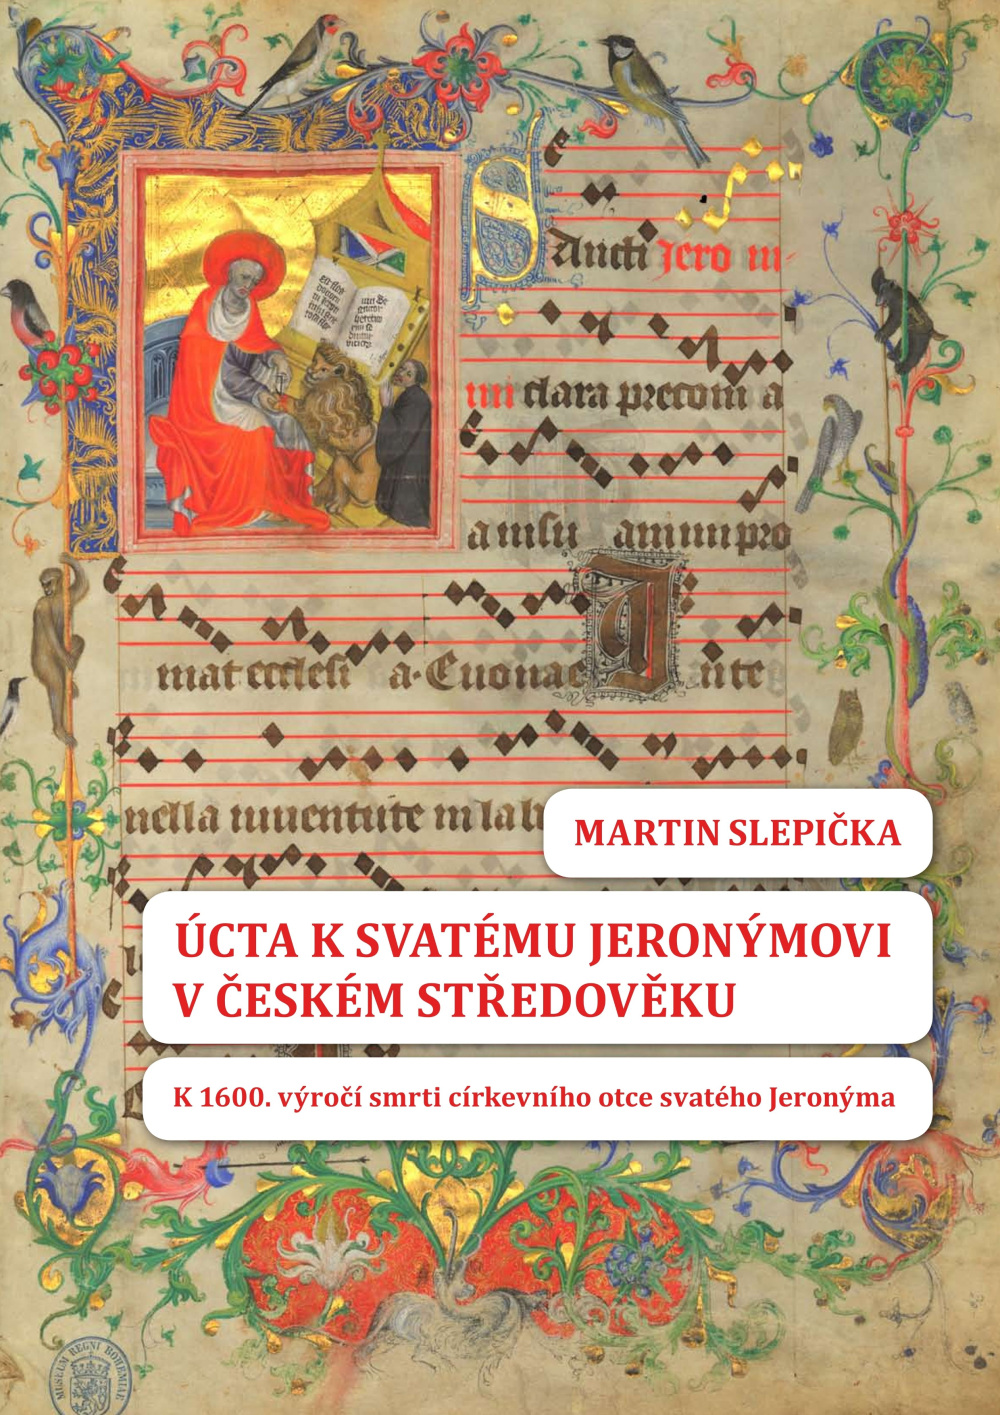 Úcta k svatému Jeronýmovi v českém středověku. K 1600. výročí smrti církevního otce svatého Jeronýma